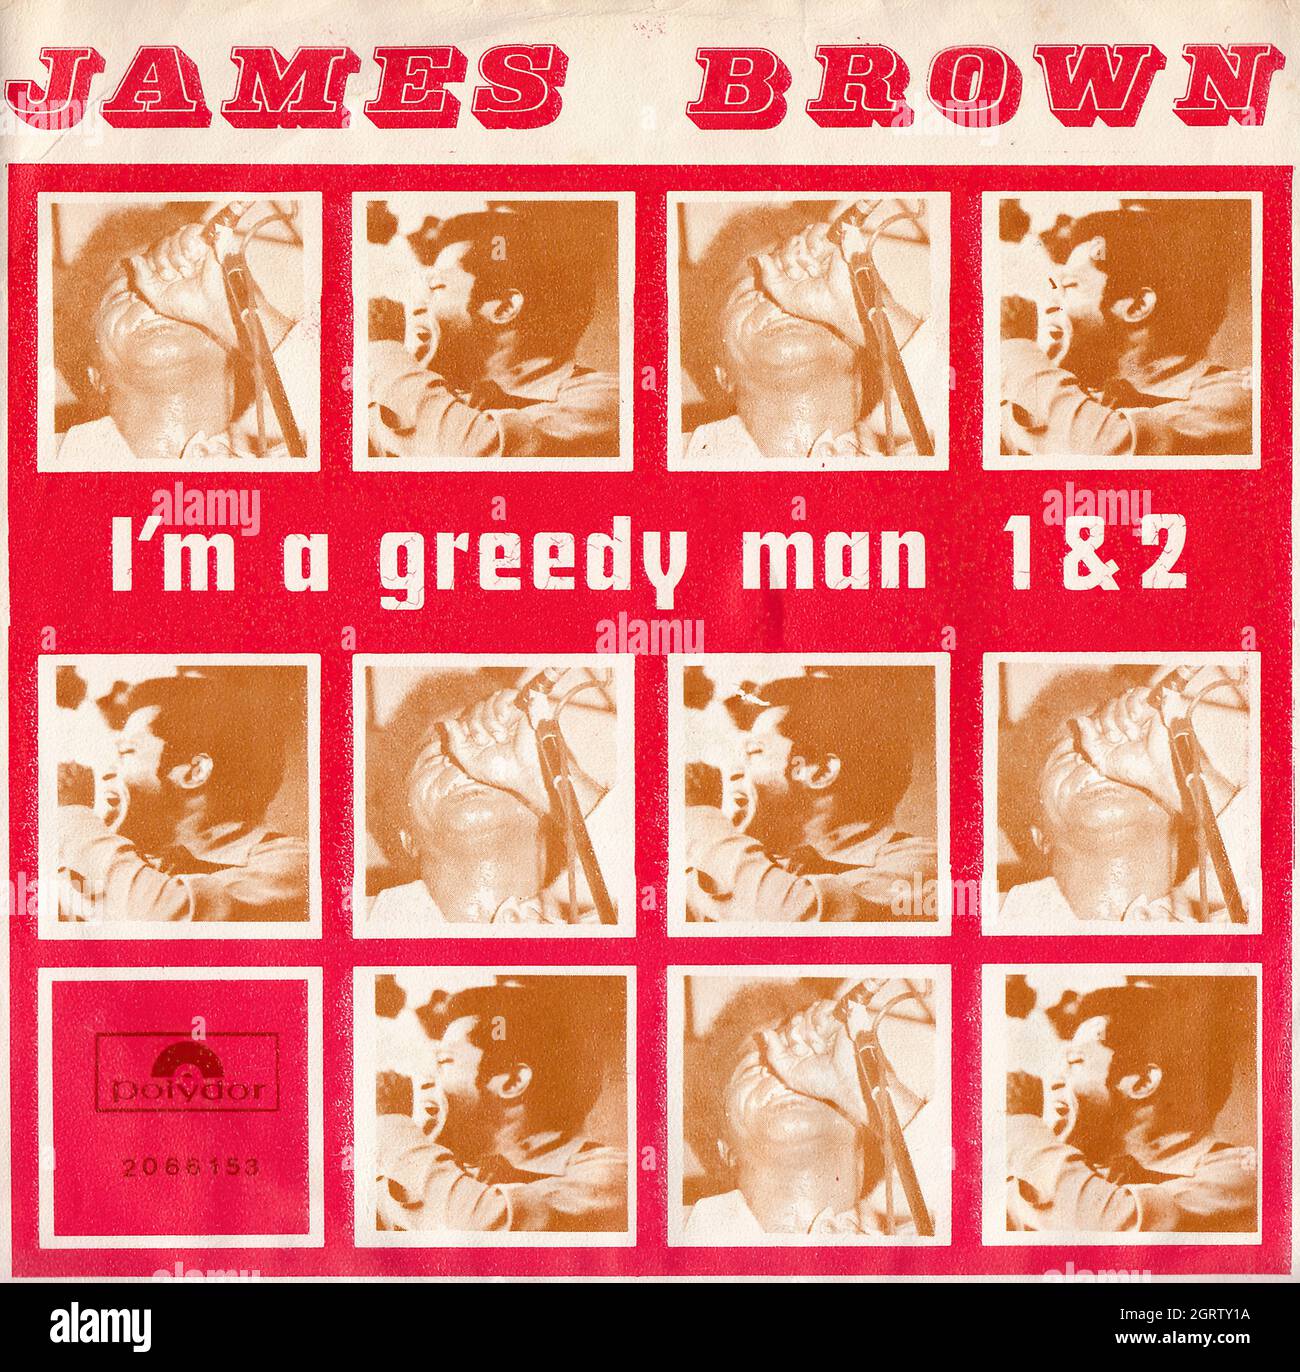 James Brown - sono un pazzo pt. 1 e 2 45 giri/min - copertina Vintage Vinyl Record Foto Stock